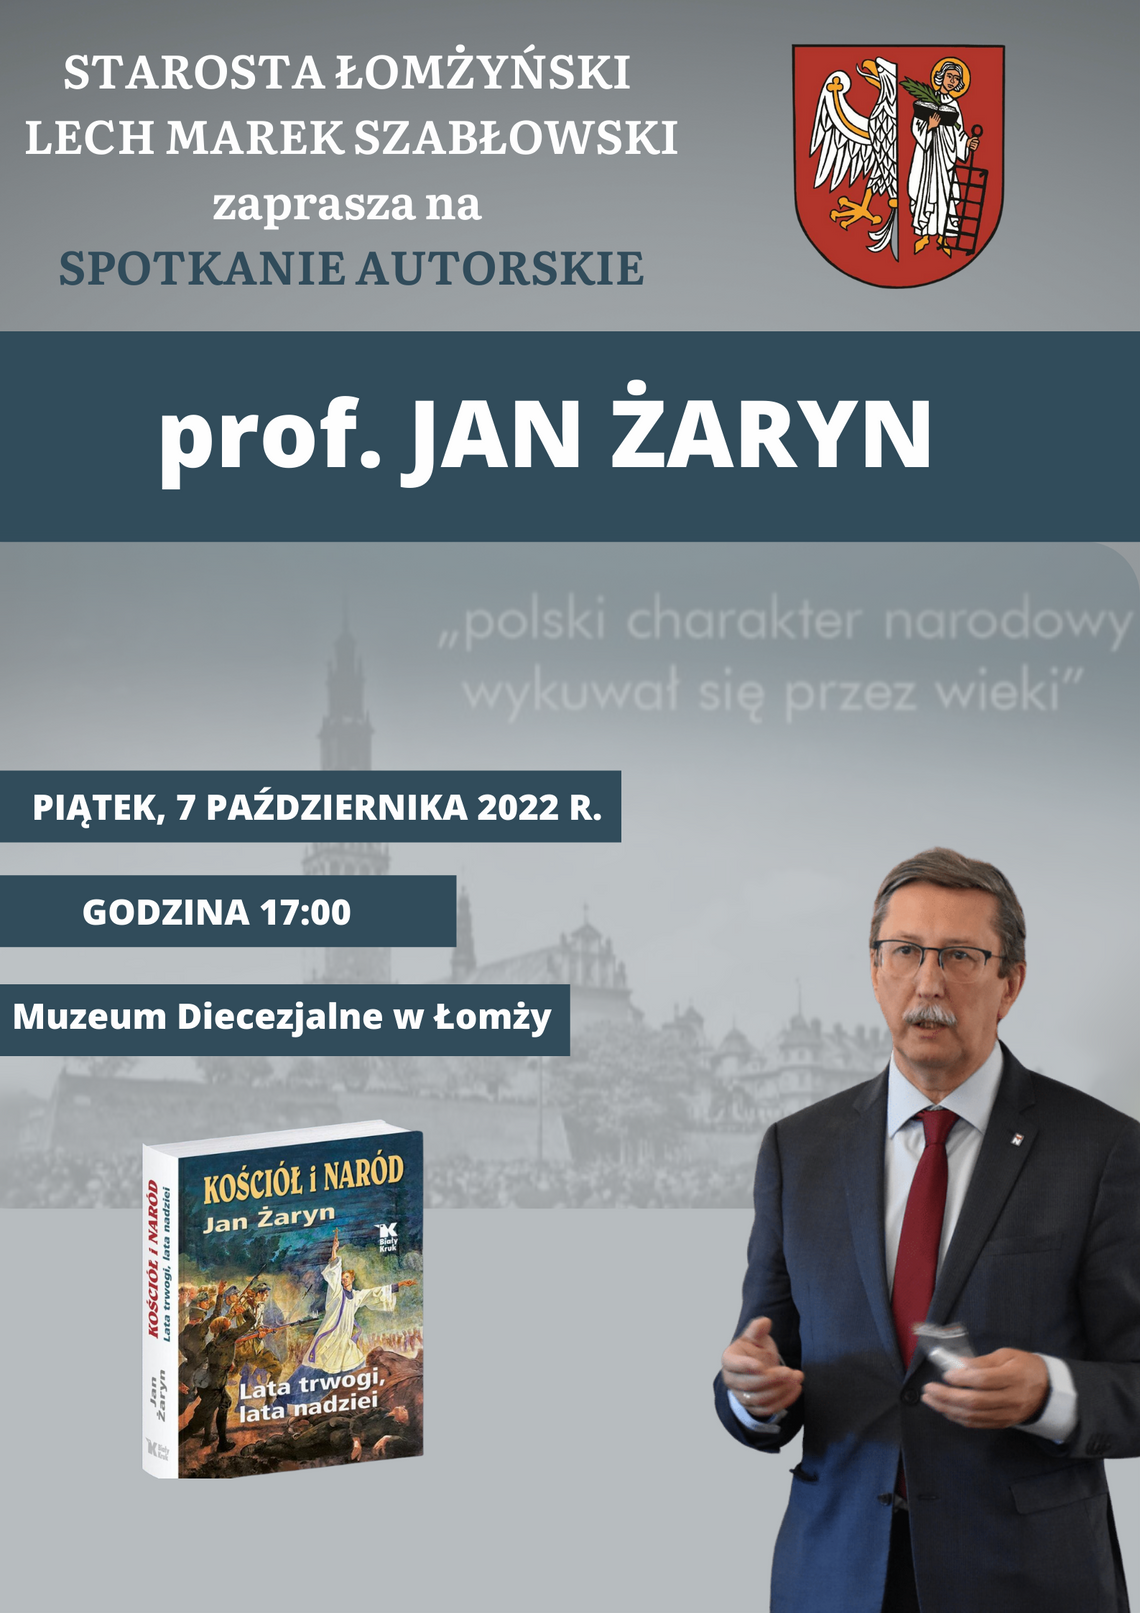 Spotkanie autorskie z profesorem Janem Żaryn